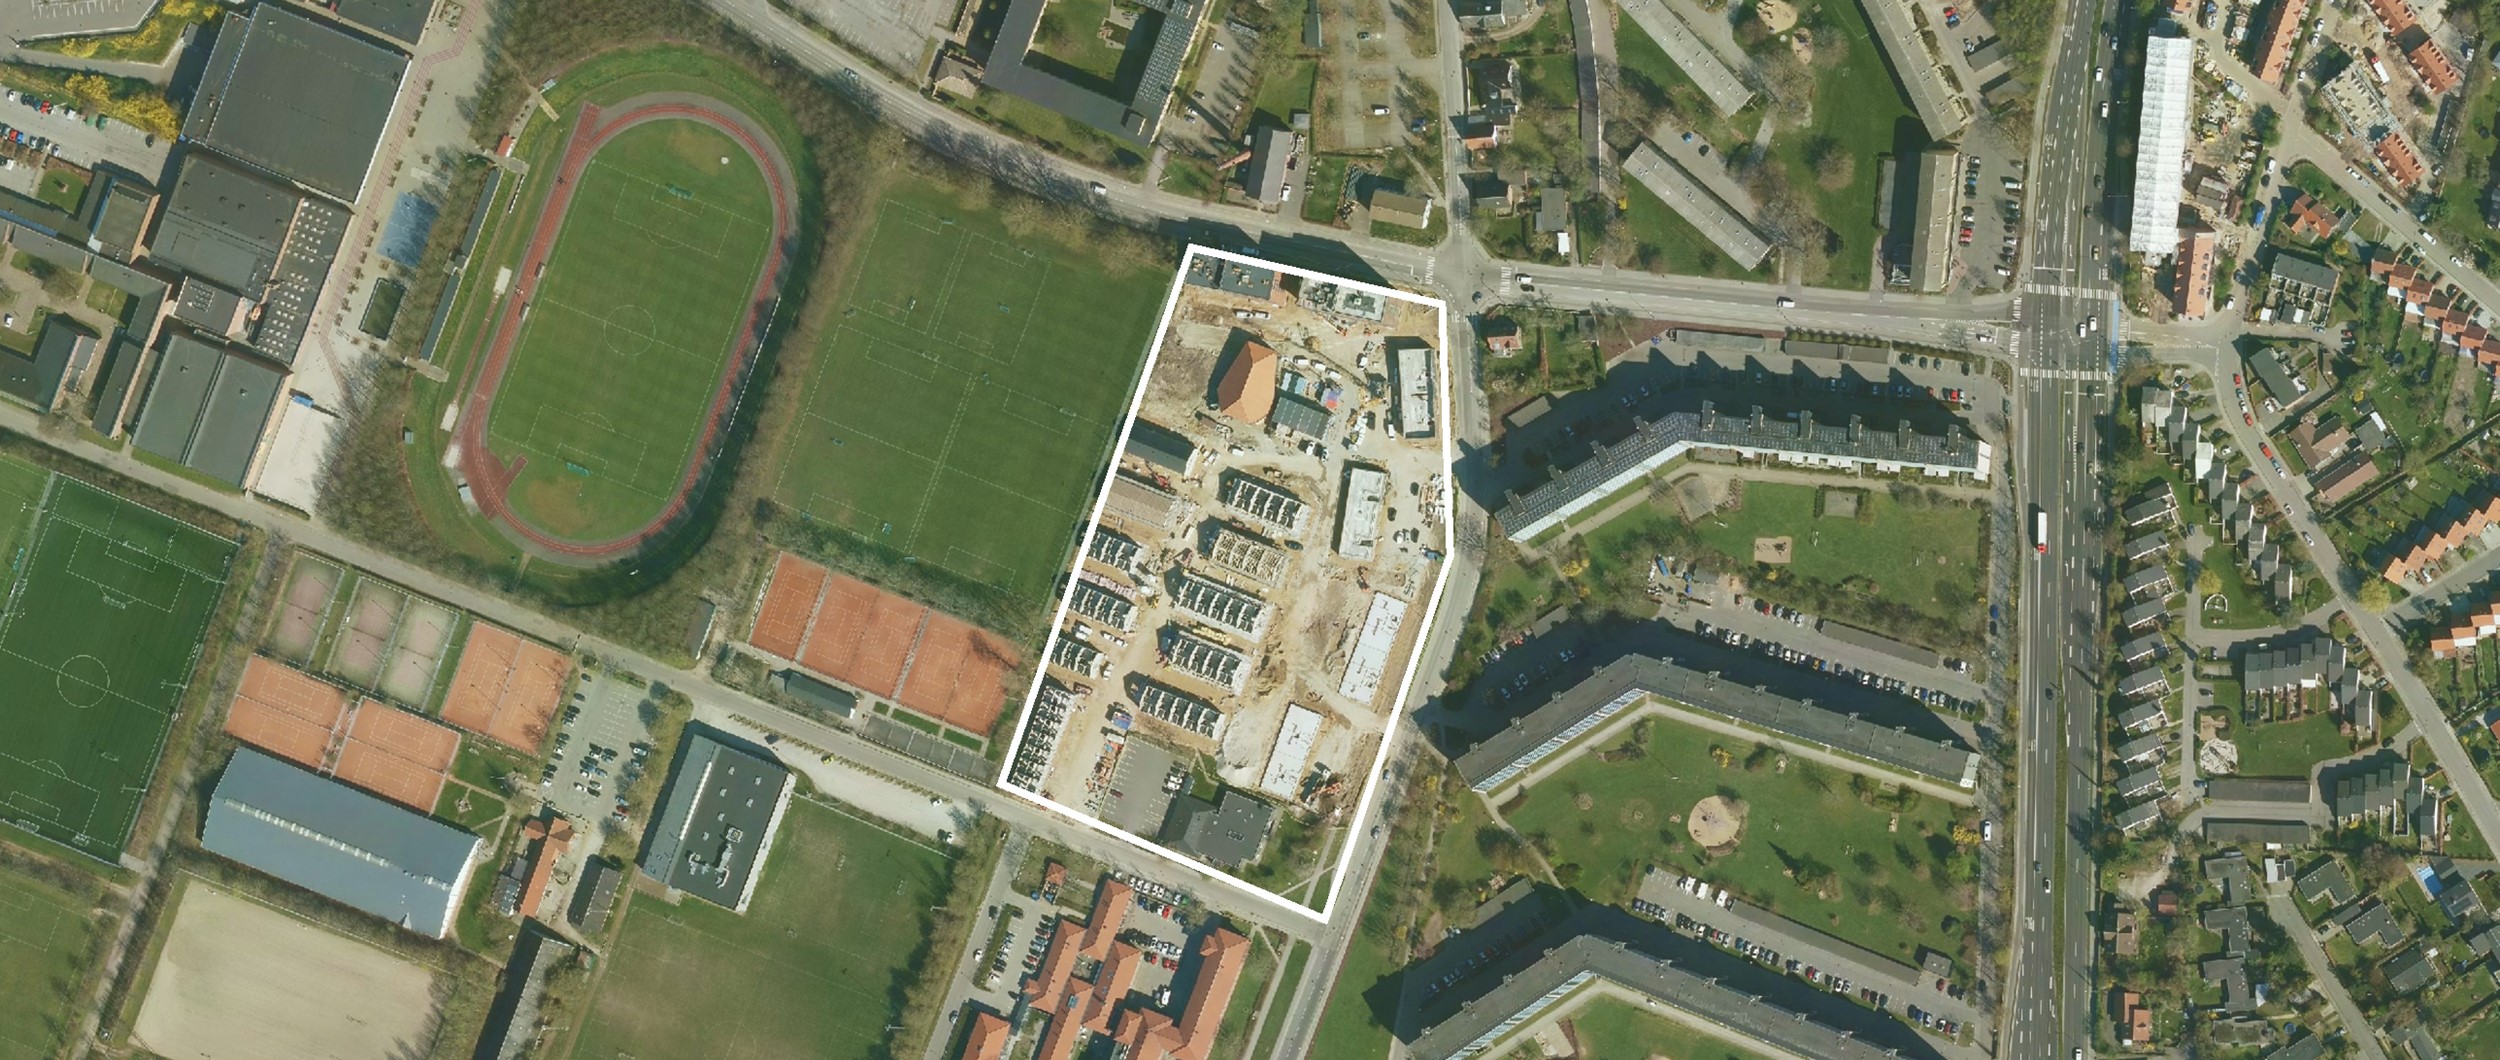 Risskov Husene ligger meget centralt i byen og har Vejlby Stadion som nabo.